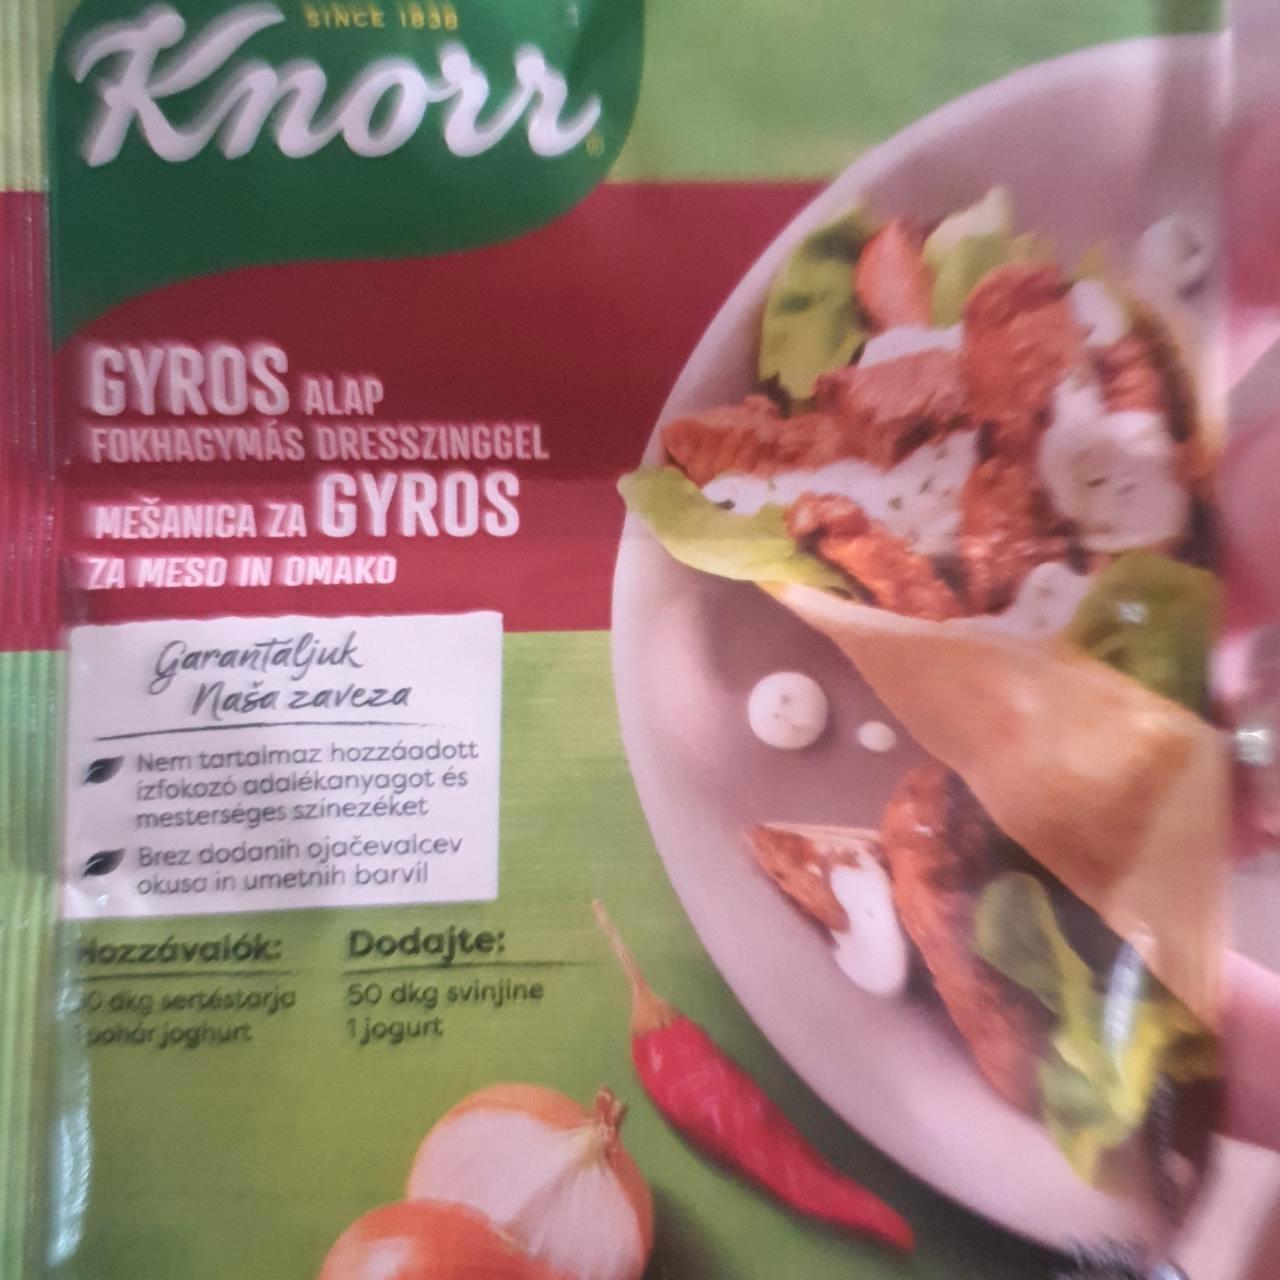 Képek - Knorr gyros alap fokhagymás dresszinggel (30 g + 10 g) 40 g